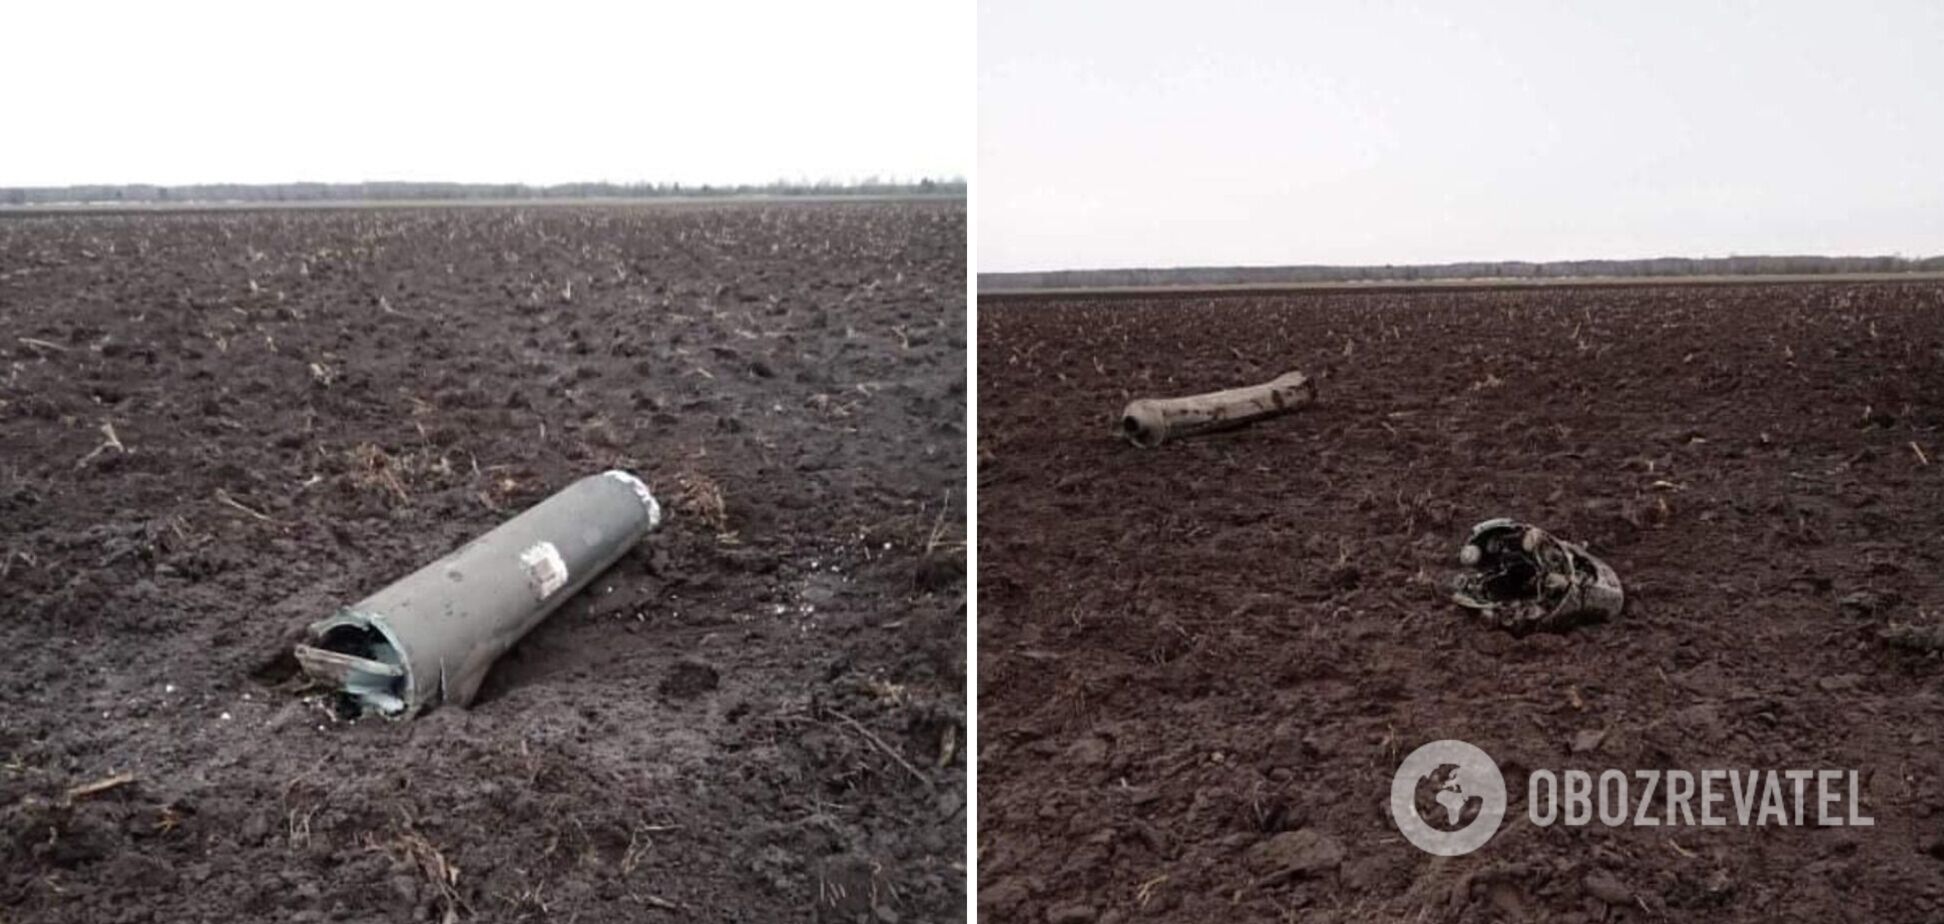 В Беларуси заявили о падении 'украинской ракеты': Лукашенко отправил на место военных и следователей. Фото